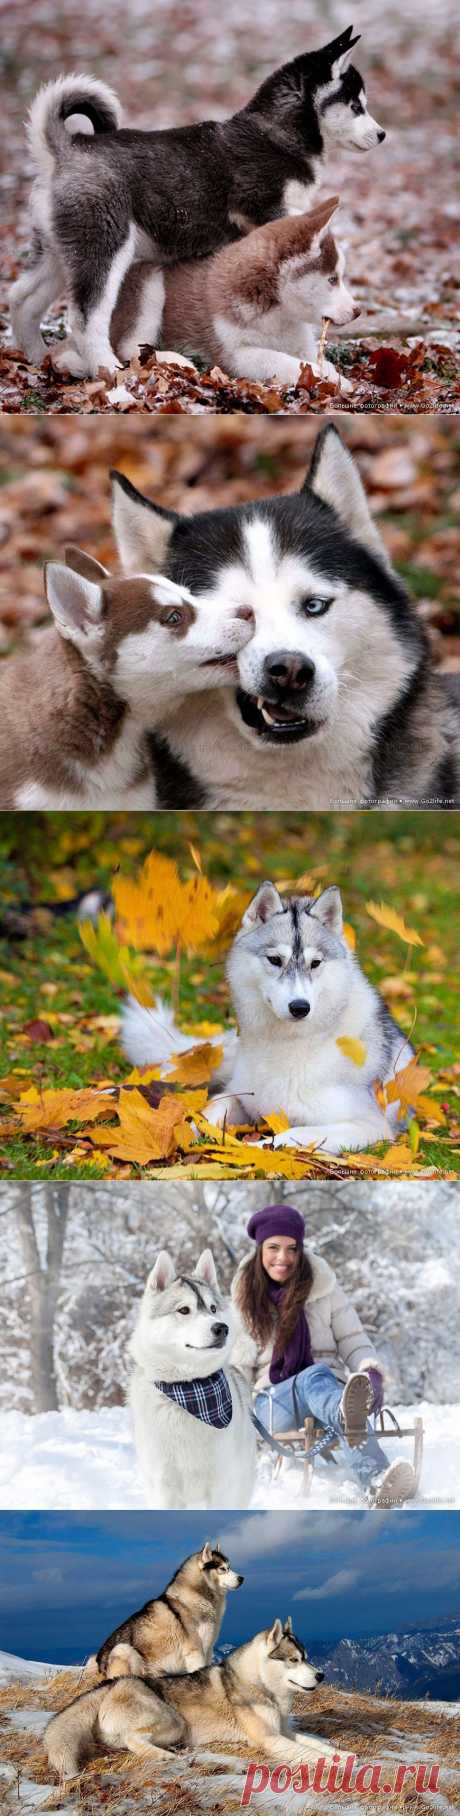 И снова о сибирском Хаски - самой красивой собаке на планете!